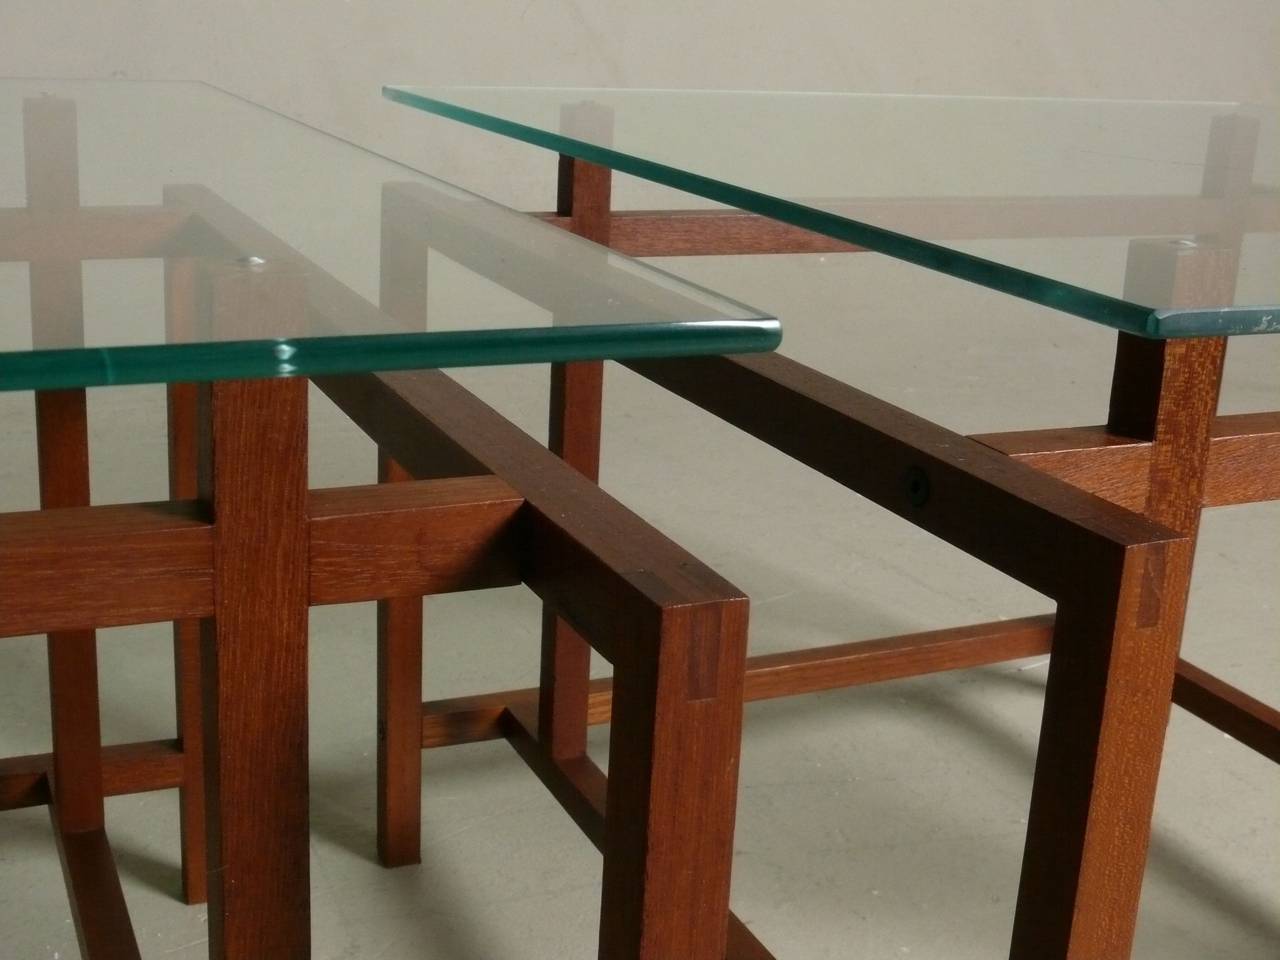 Pair of Teak Side Tables by Henning Norgaard for Komfort - SALE $1400 1